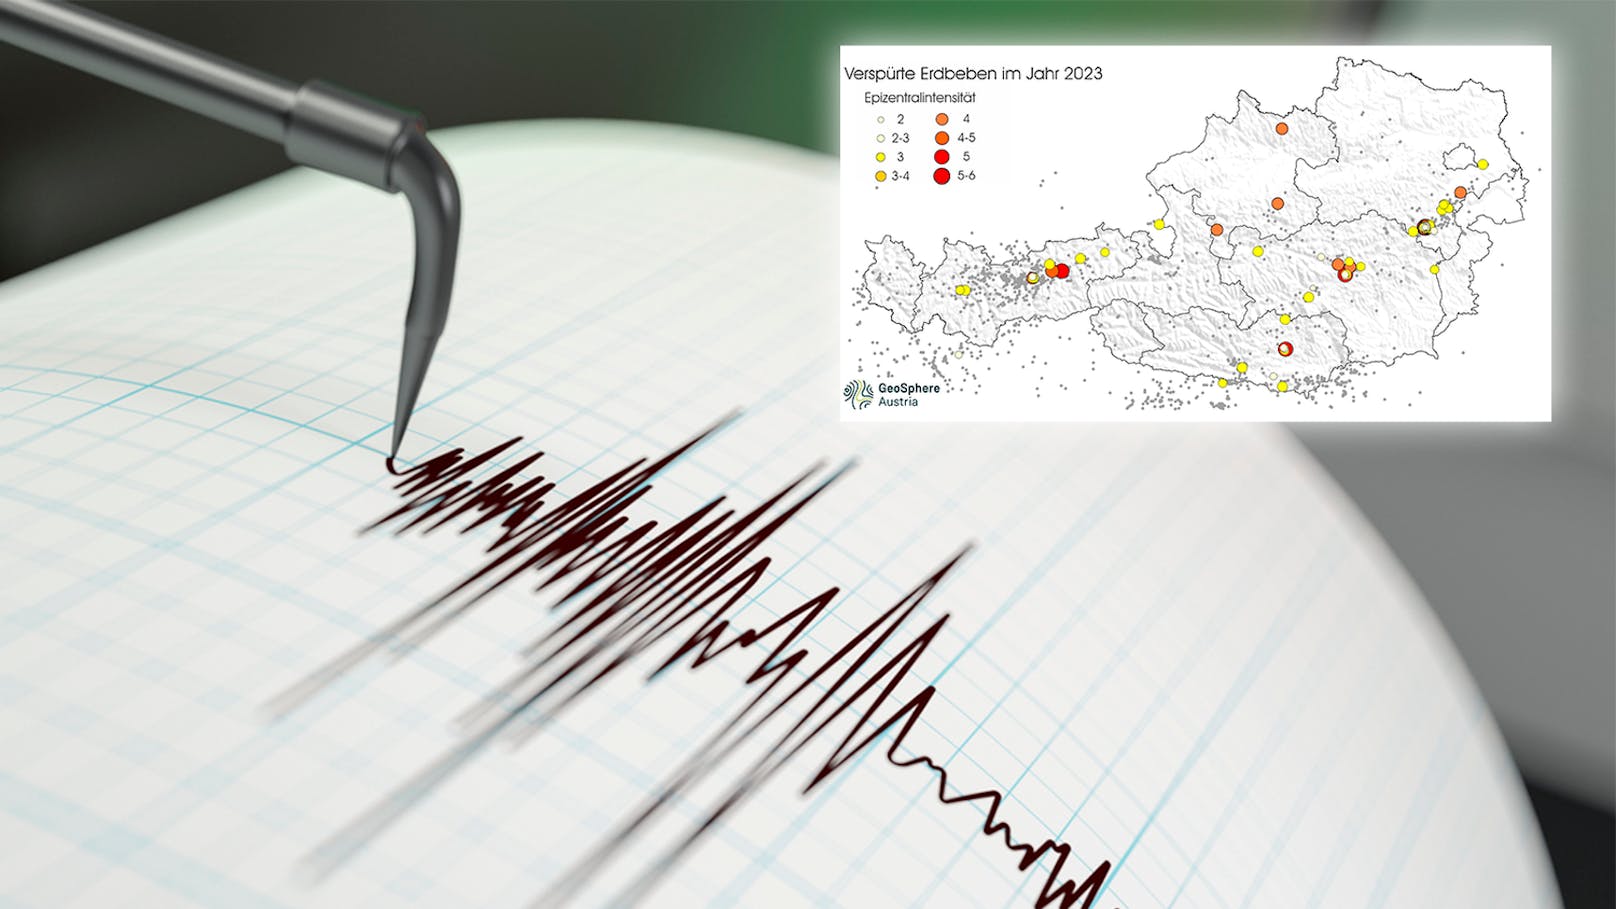 81 Mal – hier gab es in Österreich spürbare Erdbeben